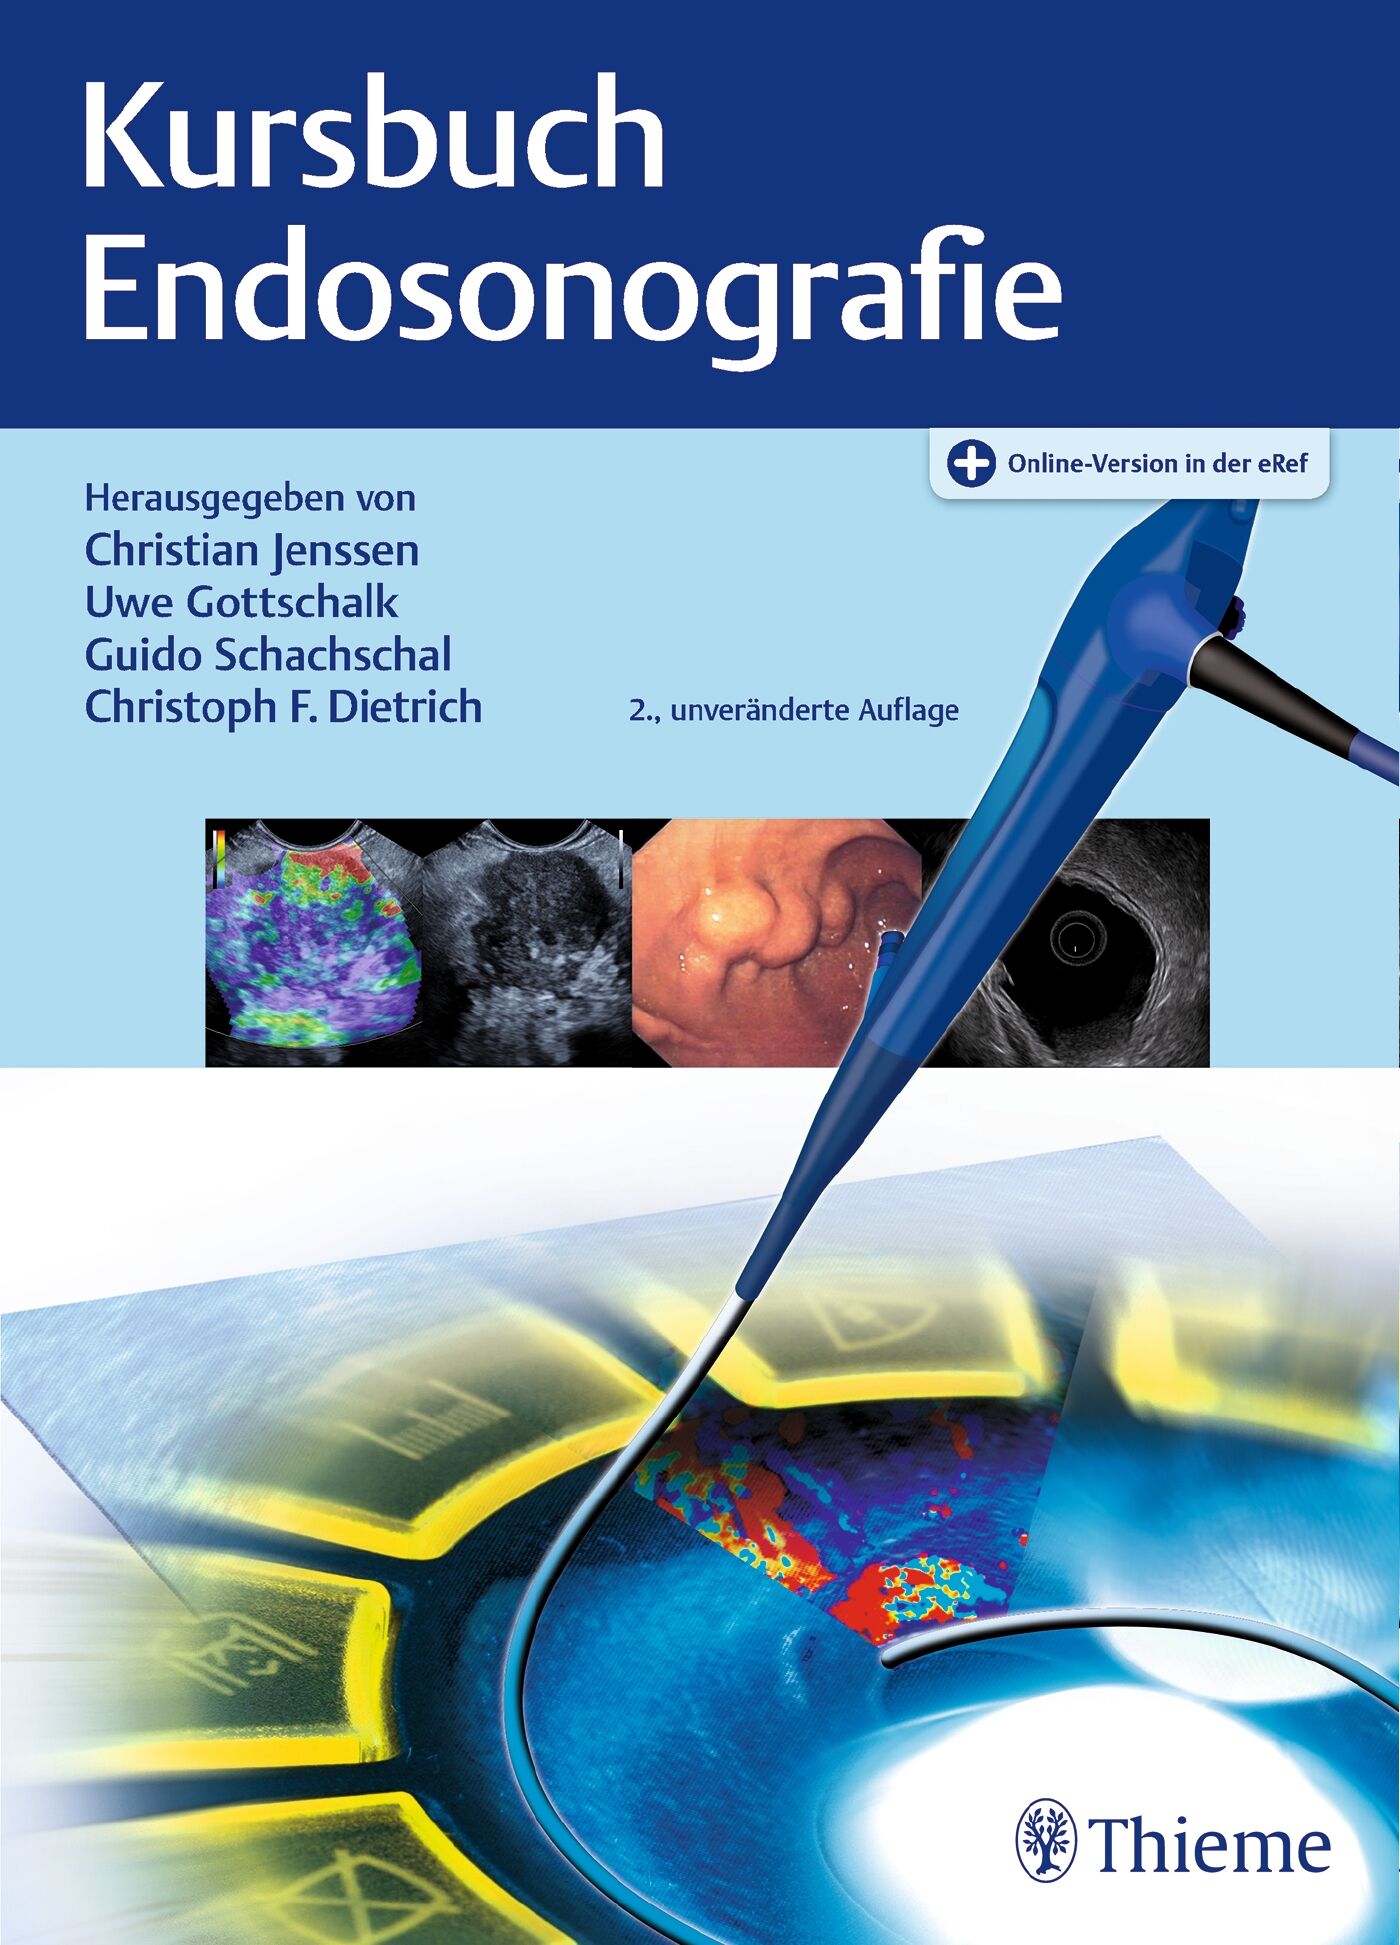 Kursbuch Endosonografie, 9783132425842